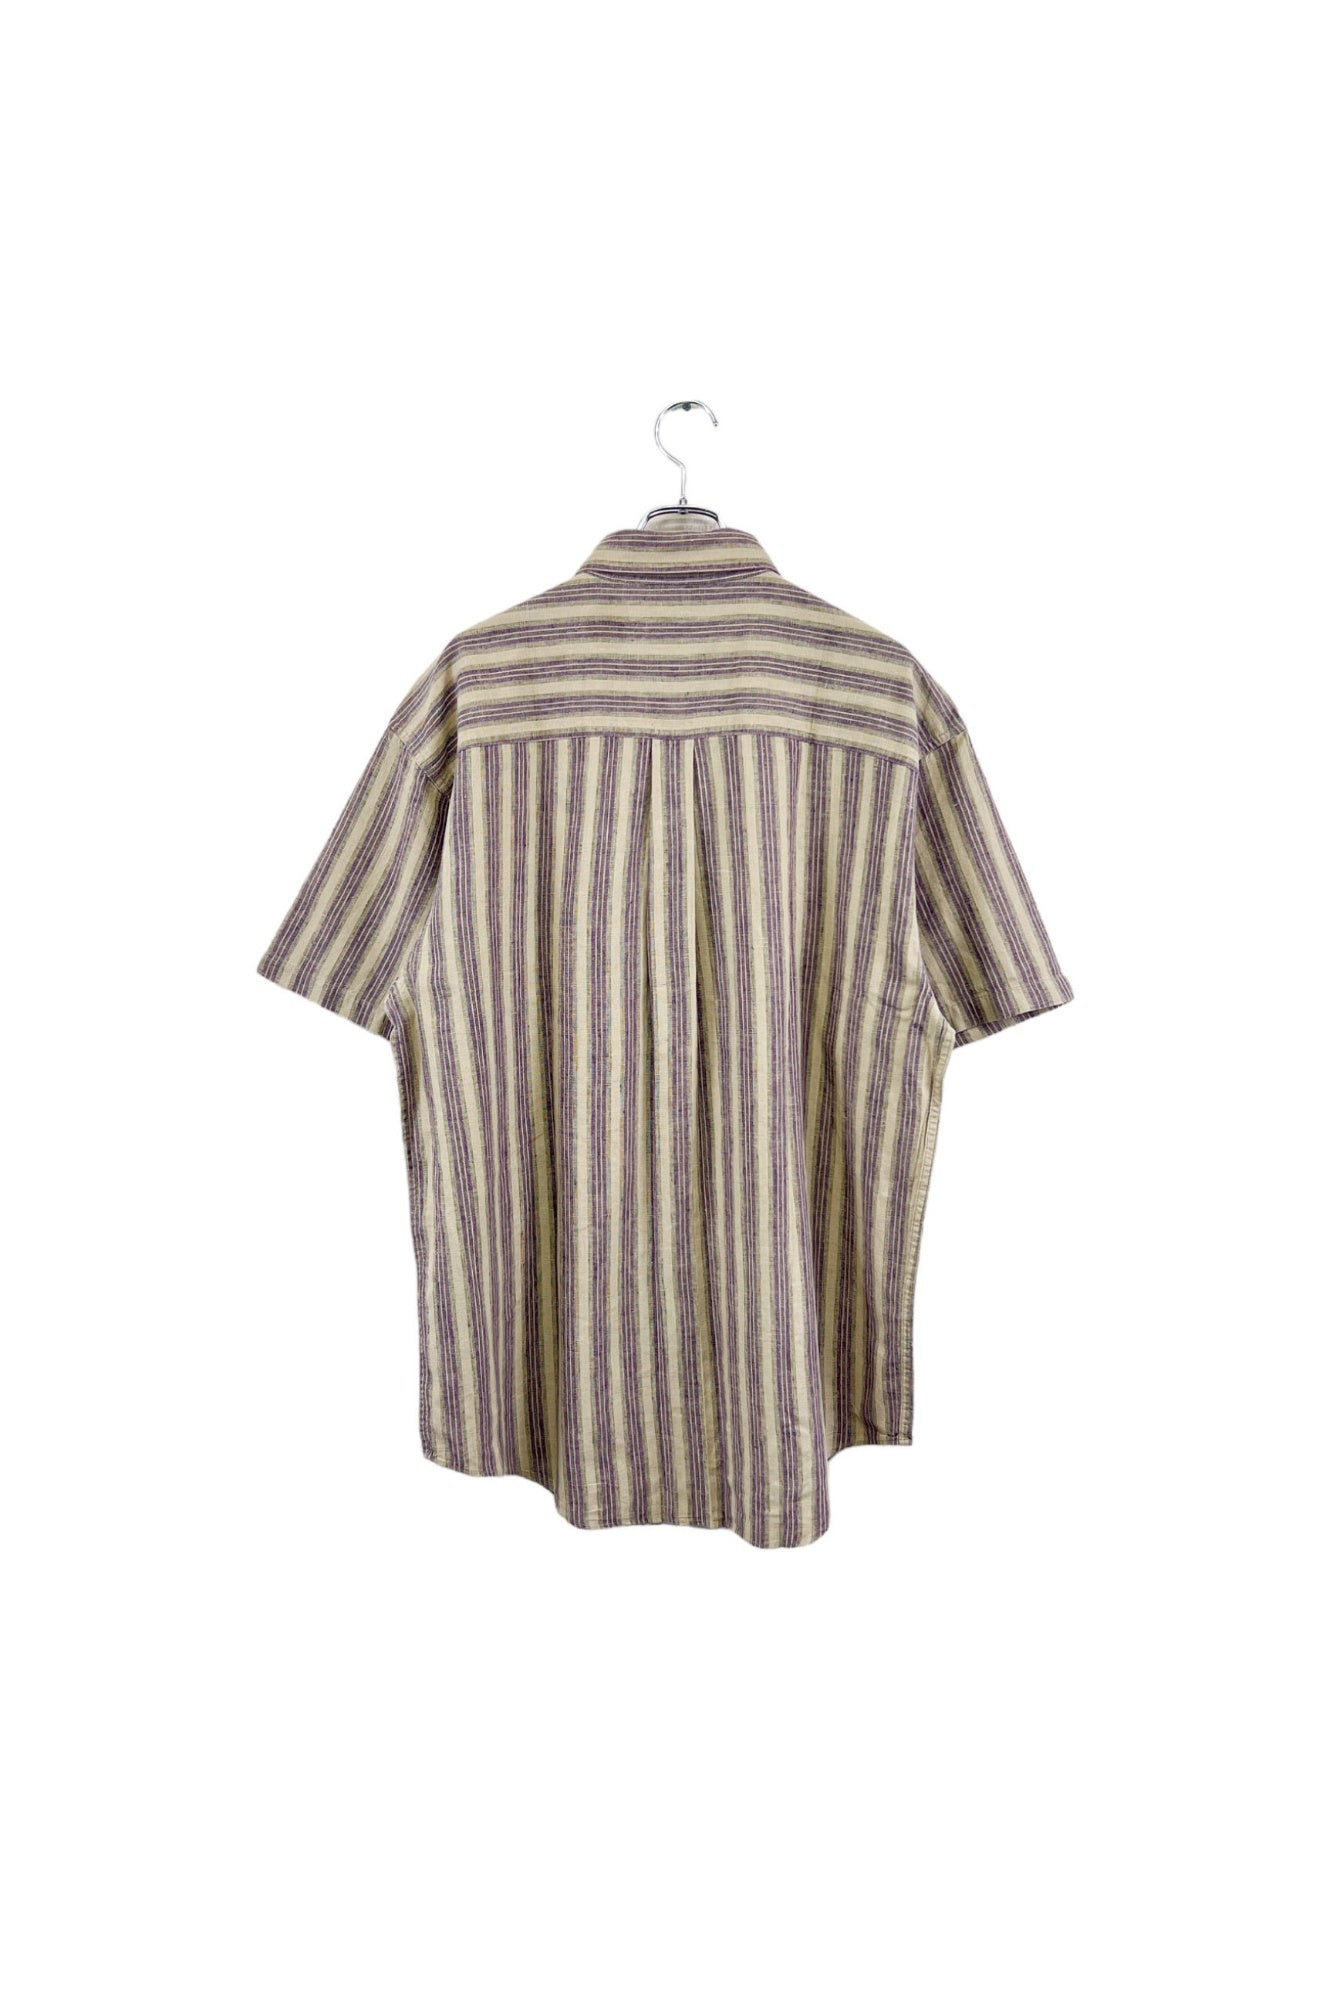 L.L.Bean stripe shirt